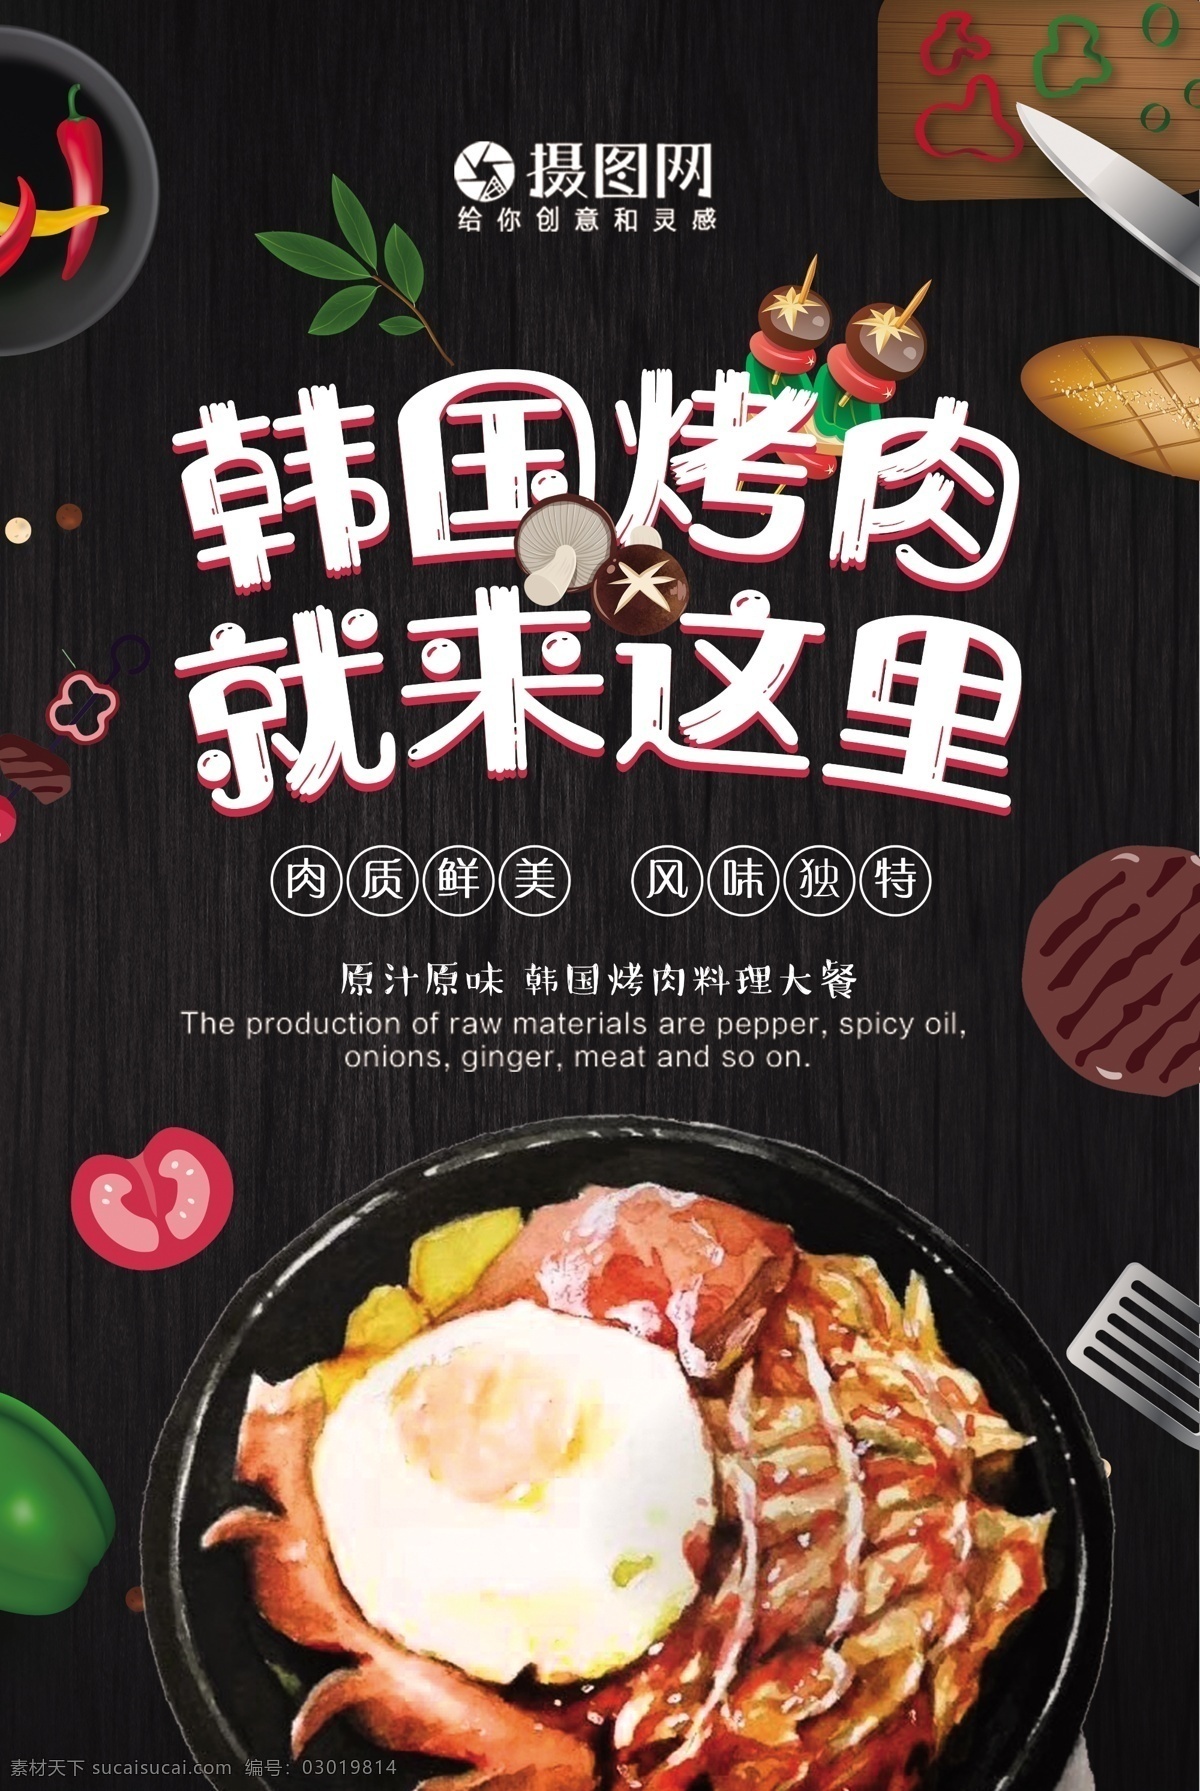 韩国 烤肉 美食 海报 韩国烤肉 拌饭 蔬菜 矢量 香菇 鸡蛋 手绘风 刀叉 烤串 美食餐饮 美味 美食海报